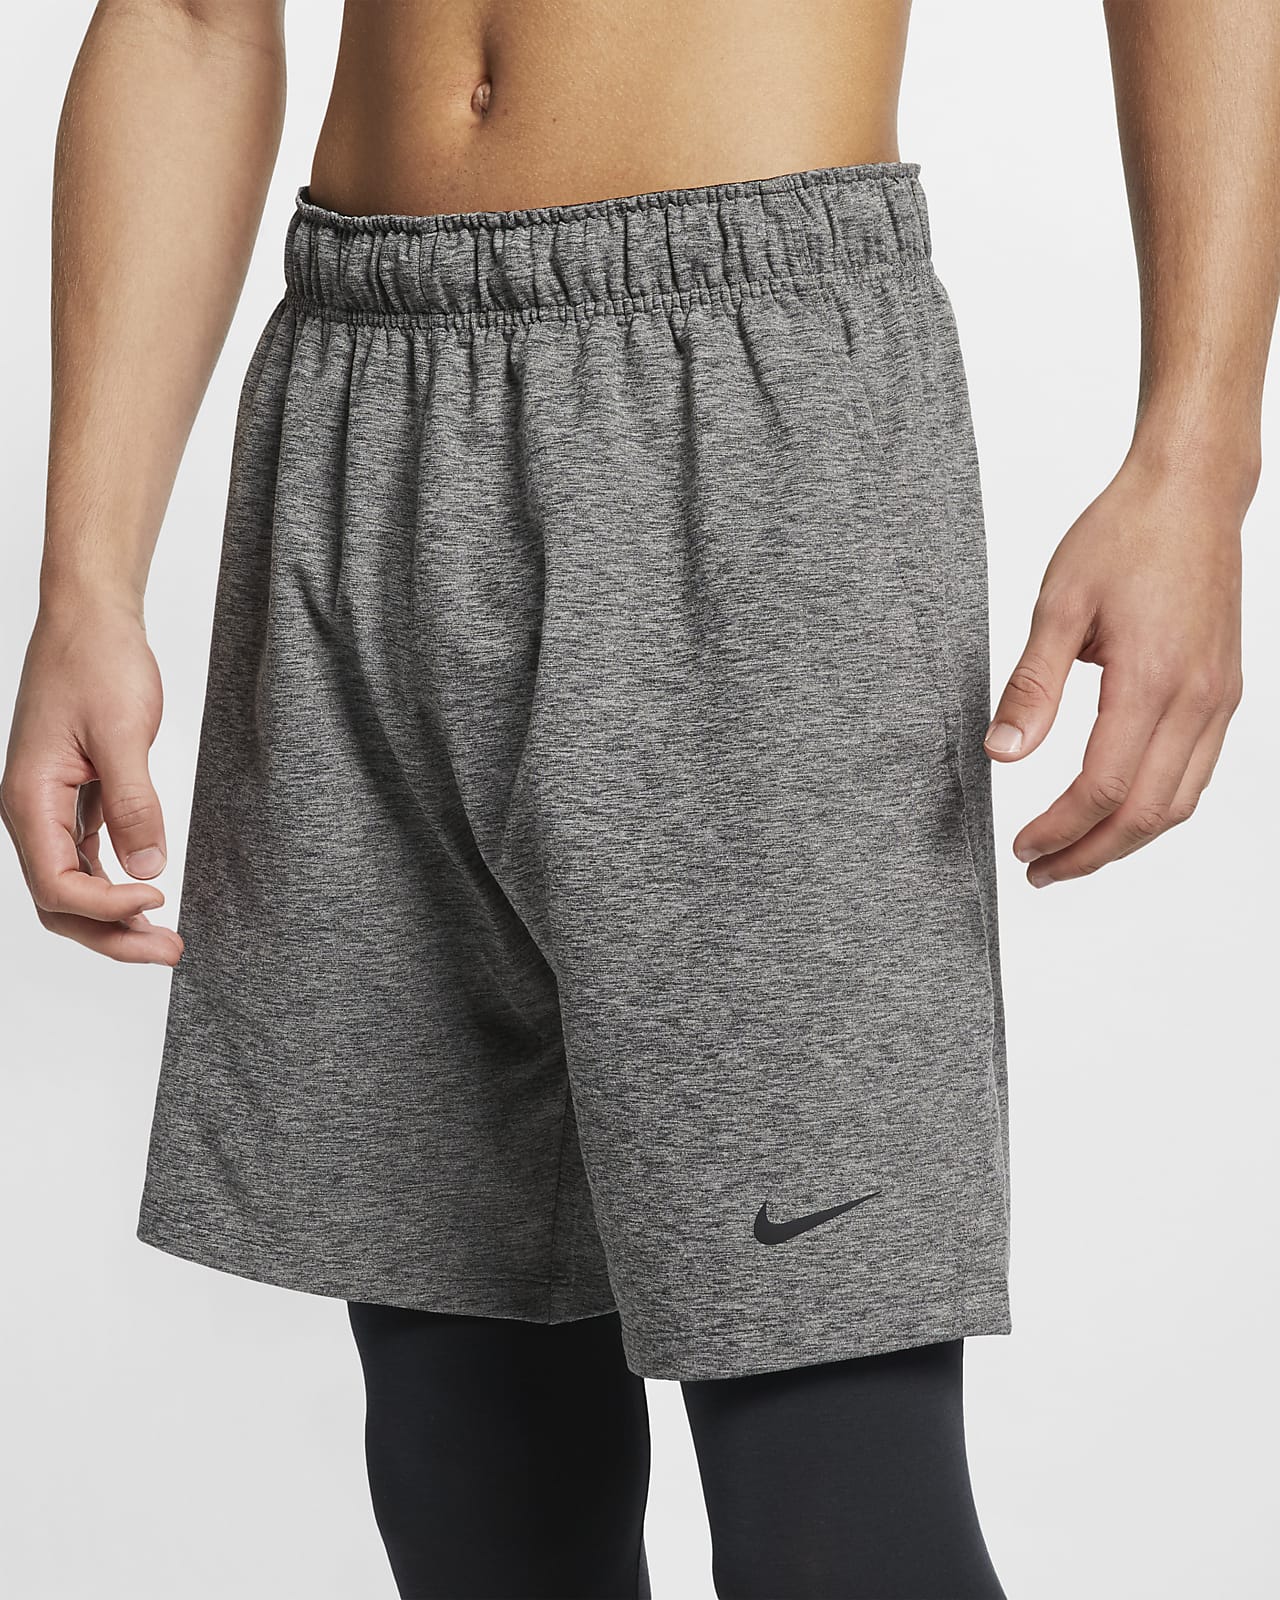 Nike Dri-FIT Men's Yoga Training Shorts. Nike LU